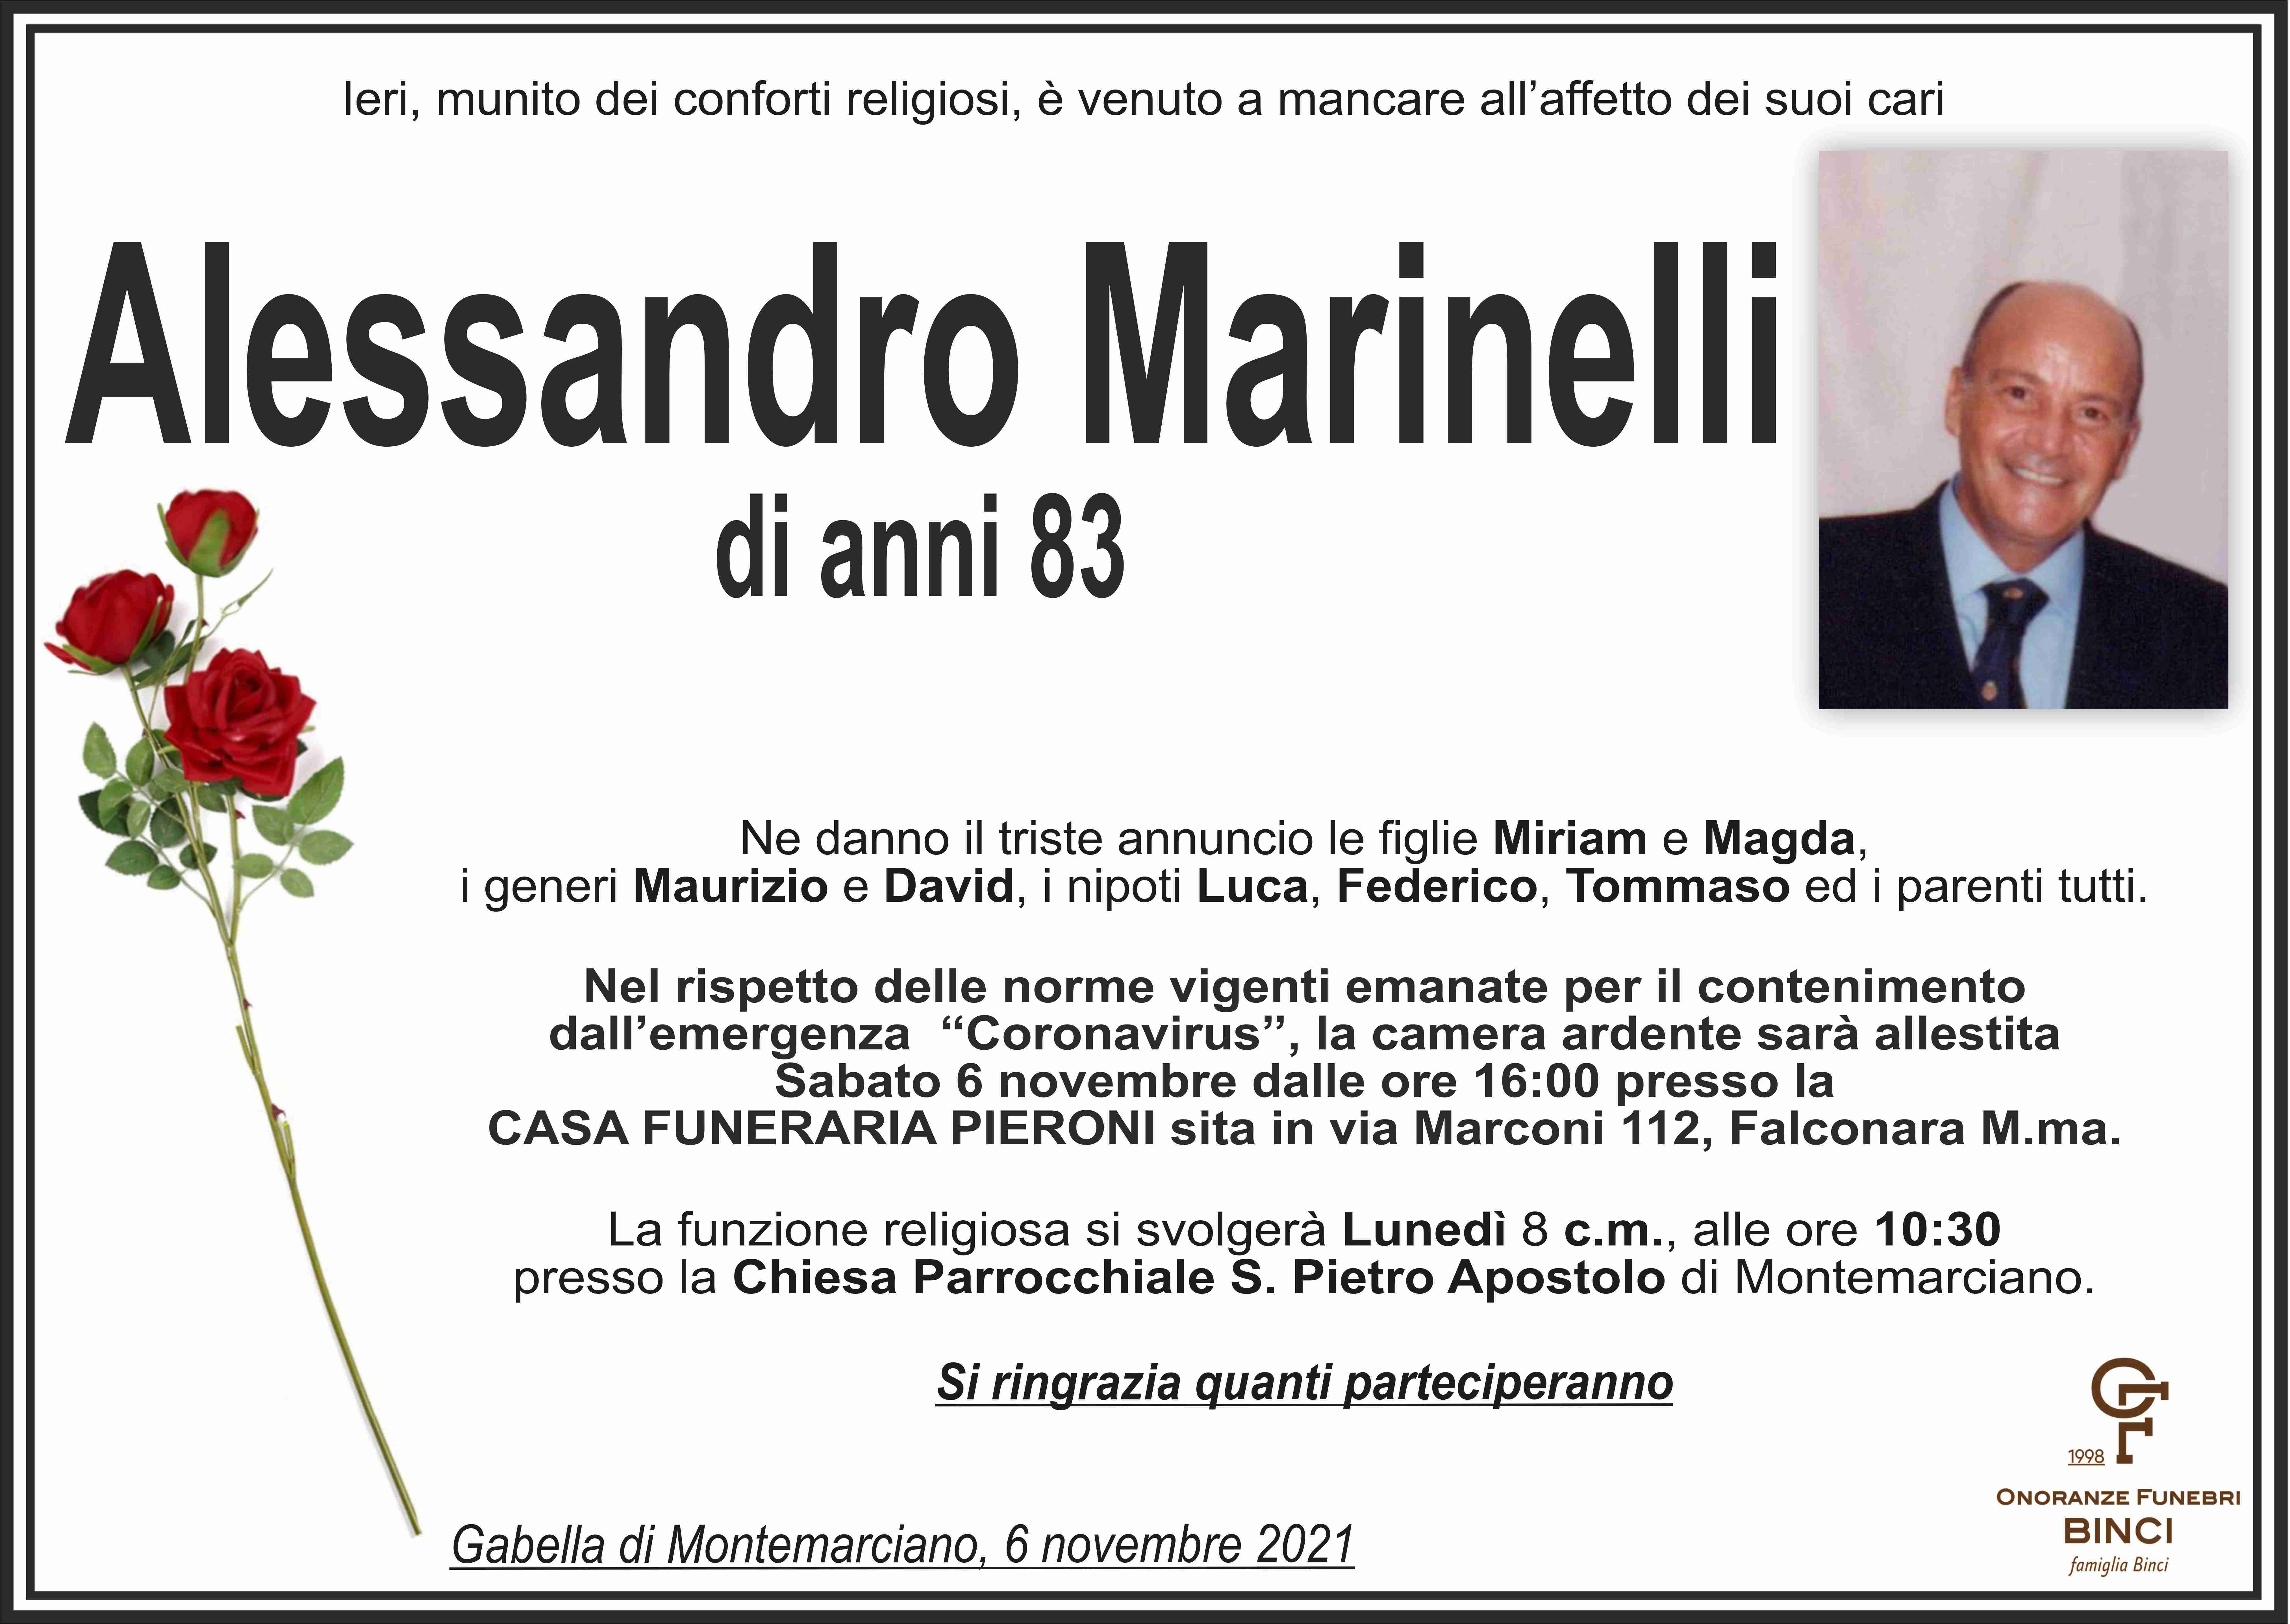 Alessandro Marinelli